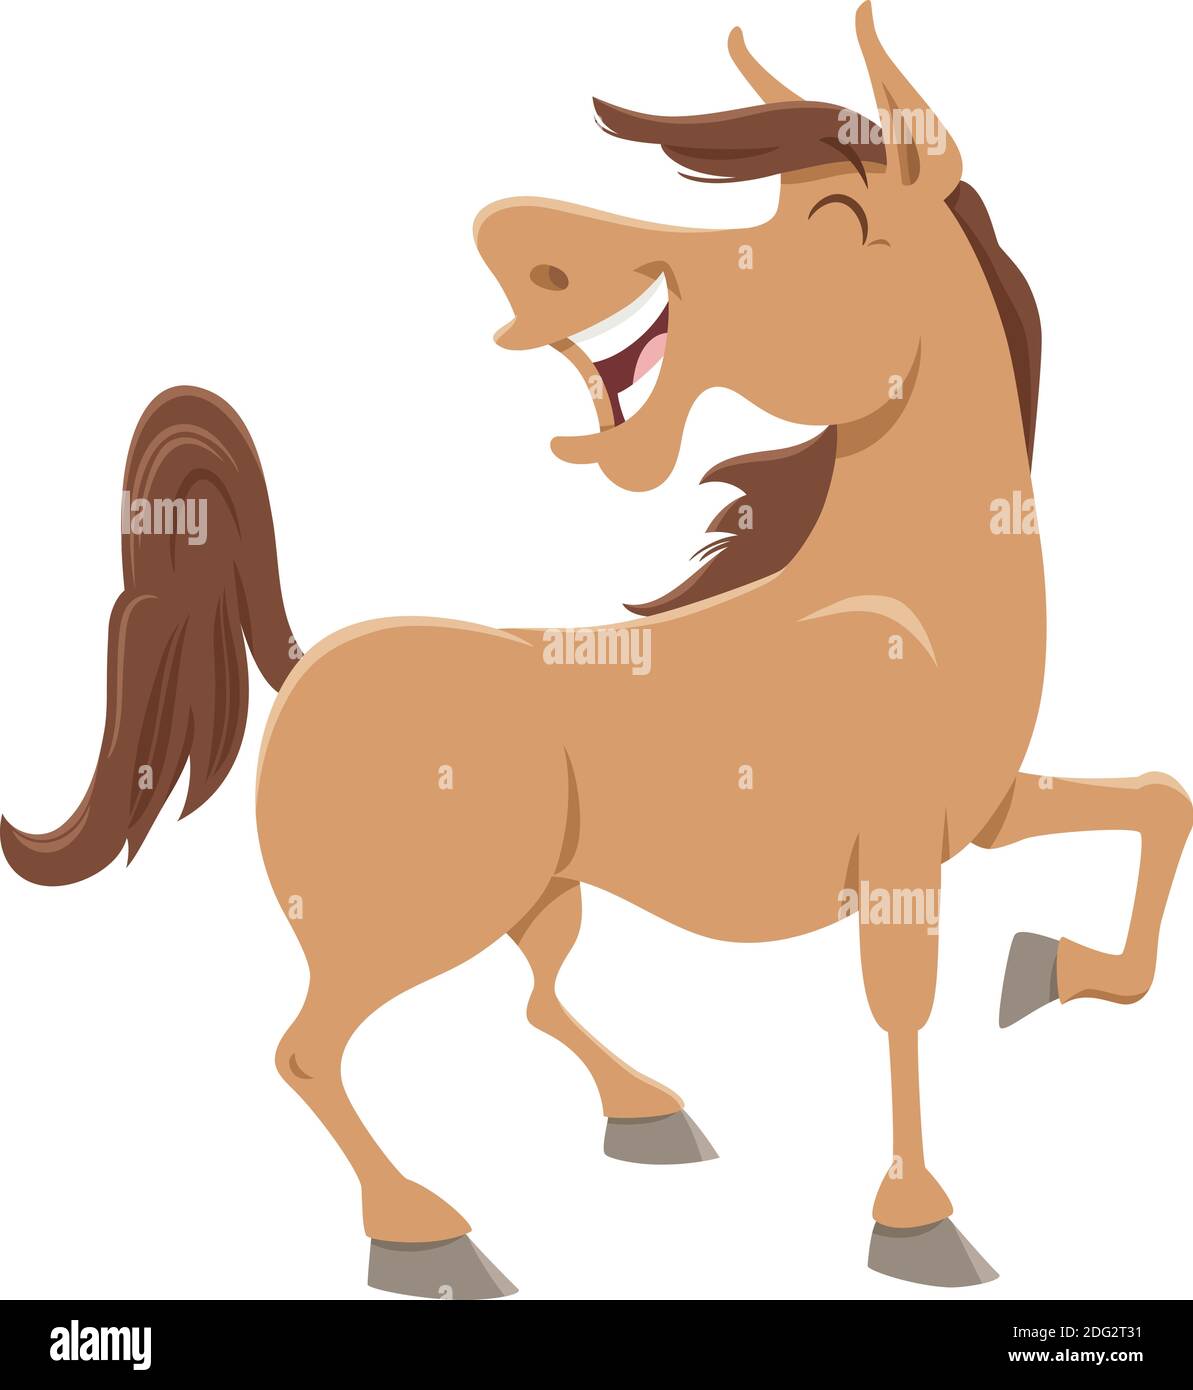 Illustration de dessin animé de drôle de ferme de cheval animal personnage de bande dessinée Illustration de Vecteur